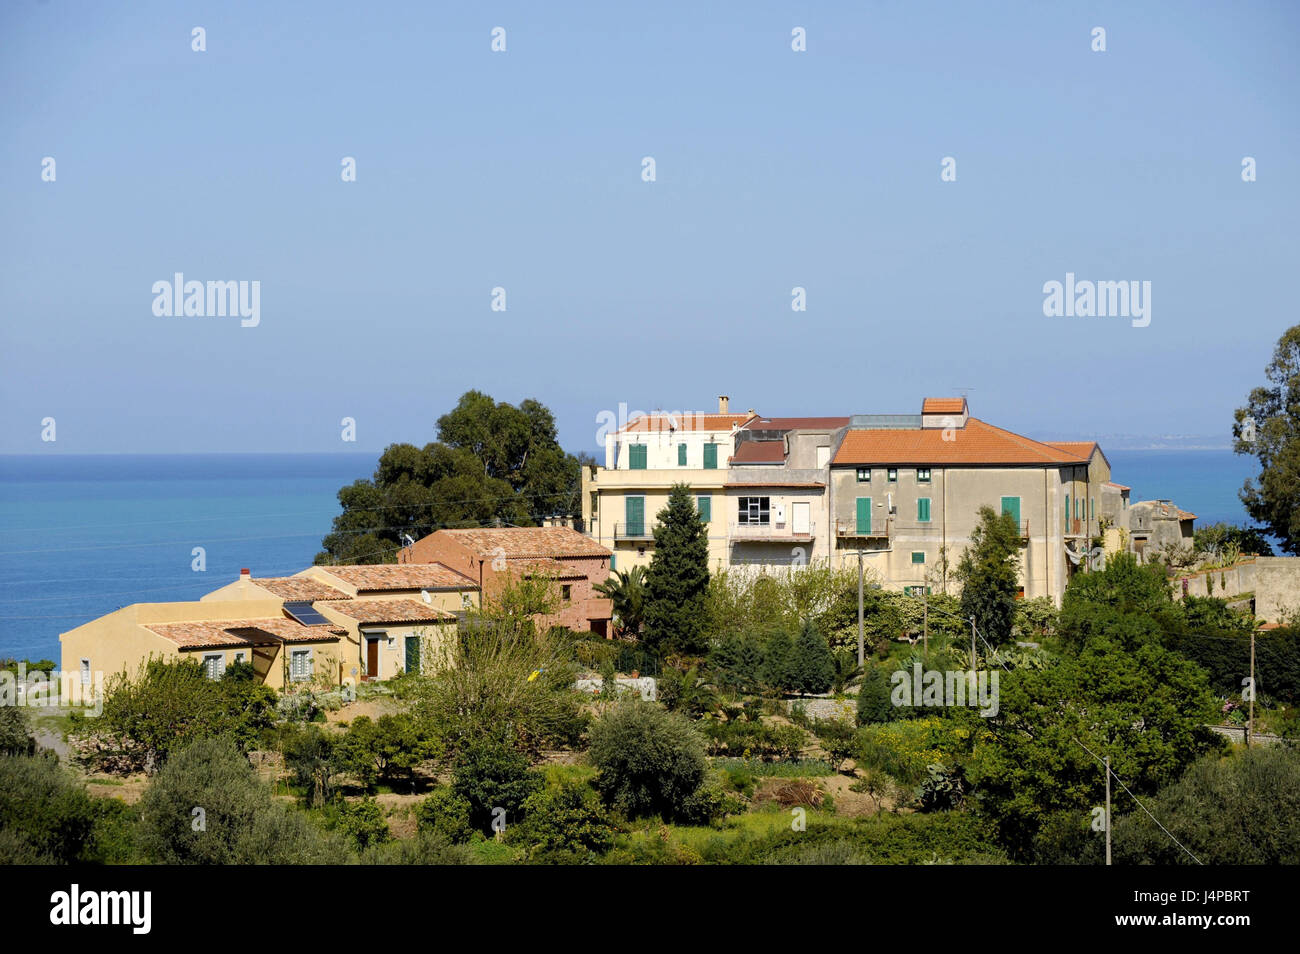 Italy, Sicily, coast, houses, Ionian sea, Stock Photo